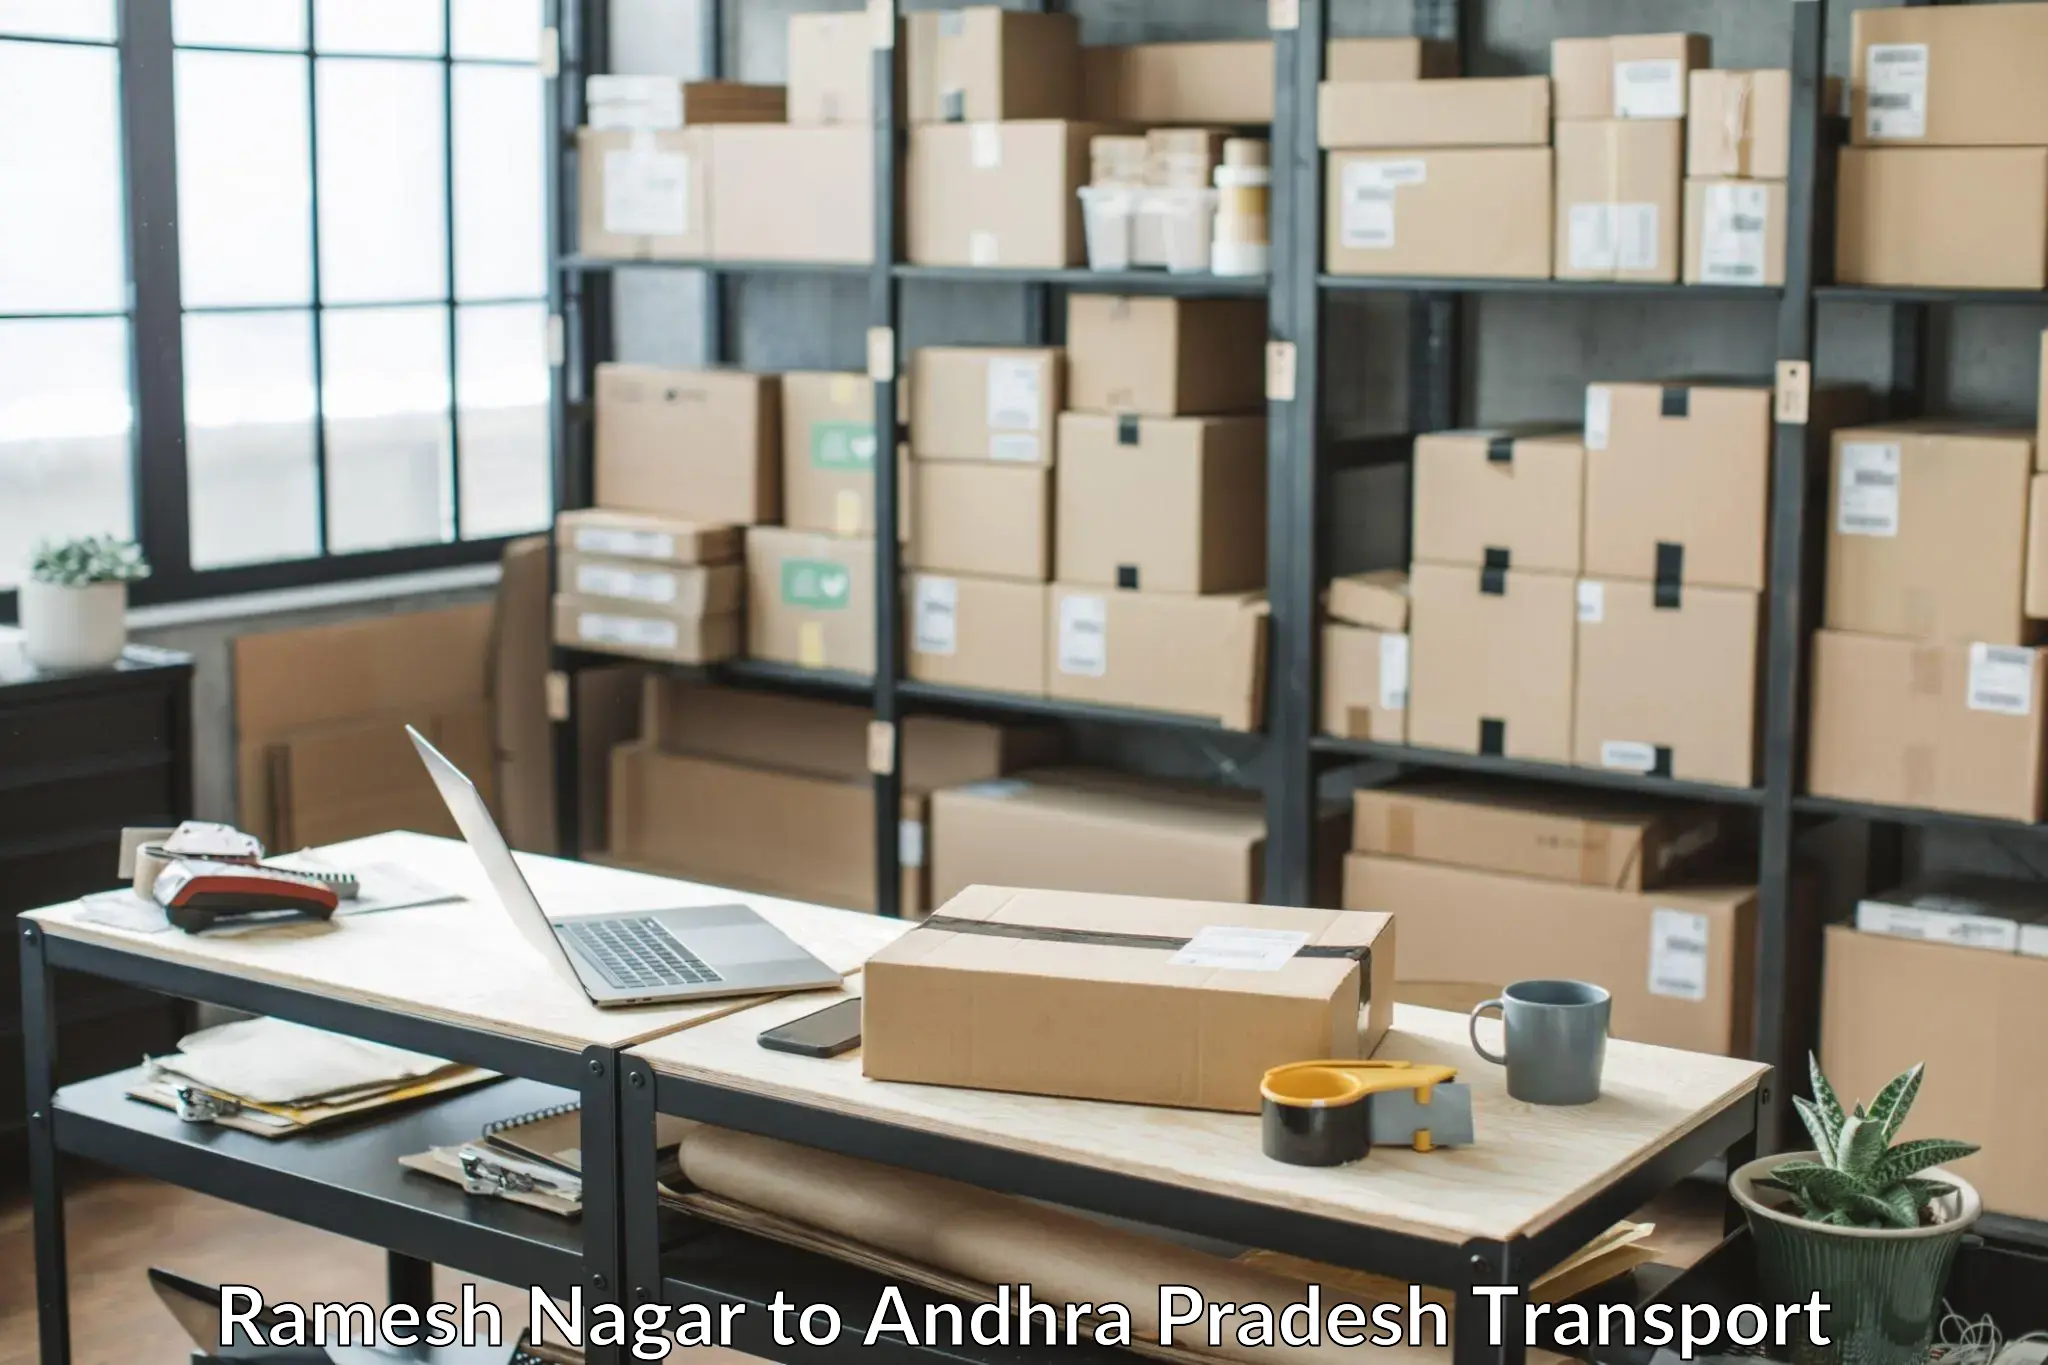 Furniture transport service Ramesh Nagar to Andhra Pradesh